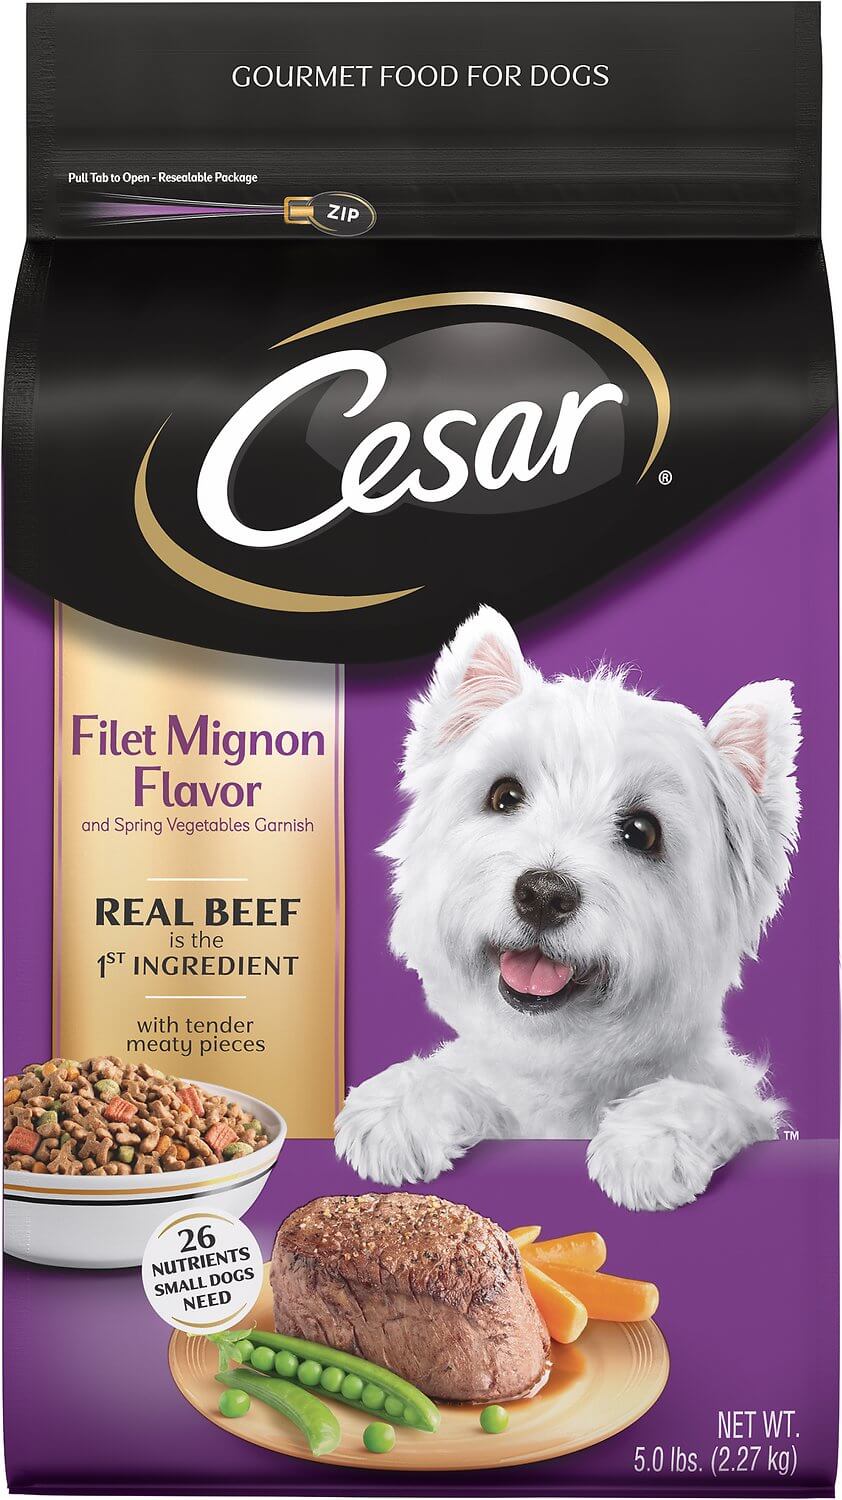 Cesar Dog Food Review Rating Recalls